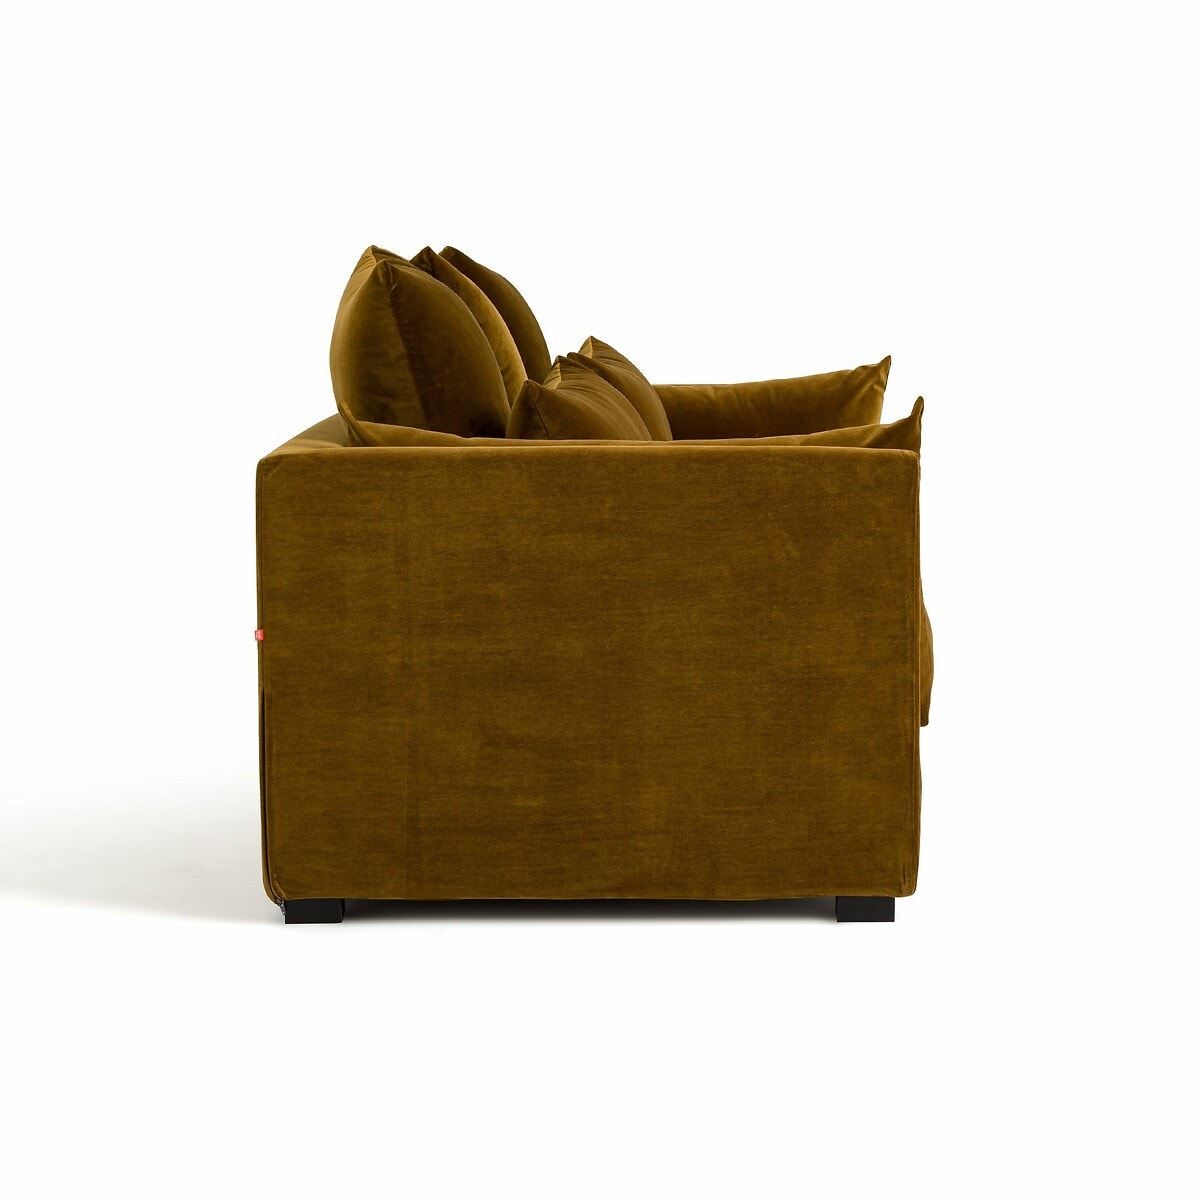 Πτυσσόμενος τριθέσιος καναπές-κρεβάτι με βελουτέ ταπετσαρία, Mariano